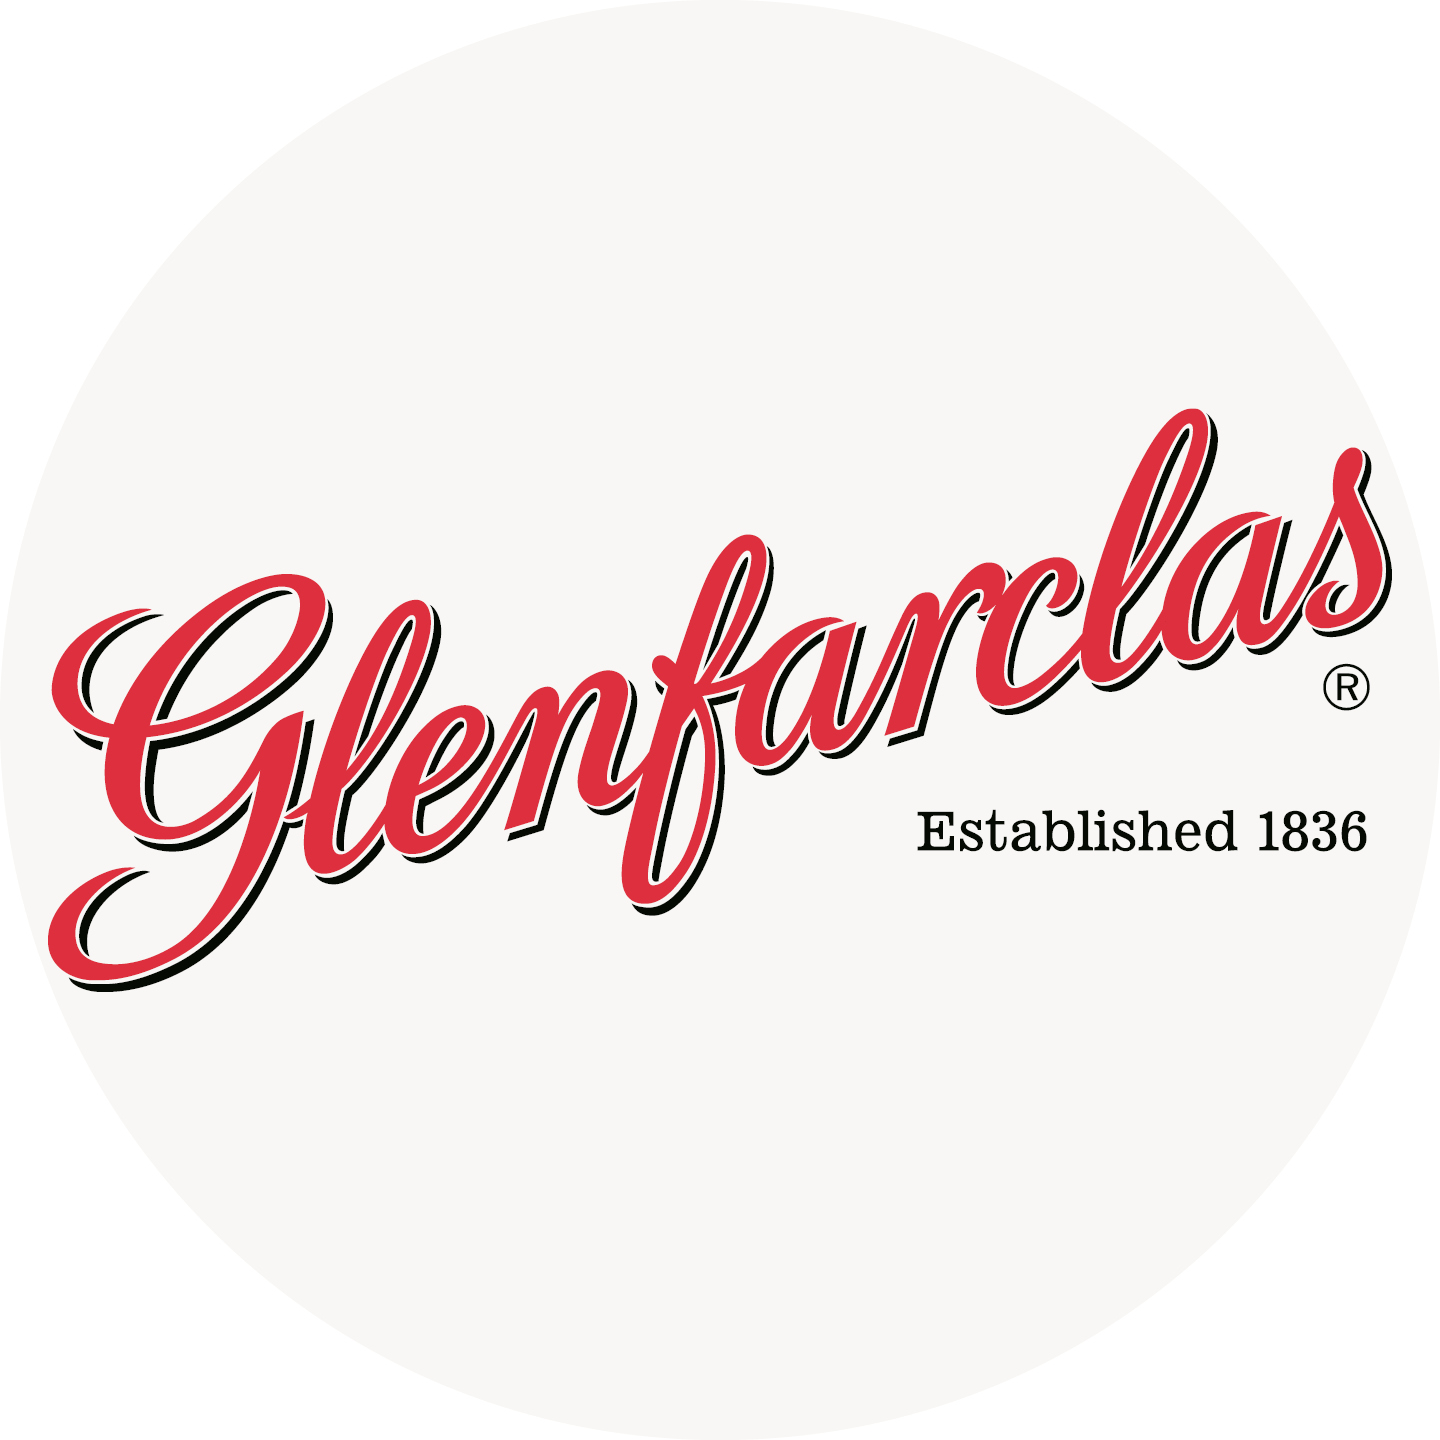 Instagram Bild mit dem Glenfarclas Logo